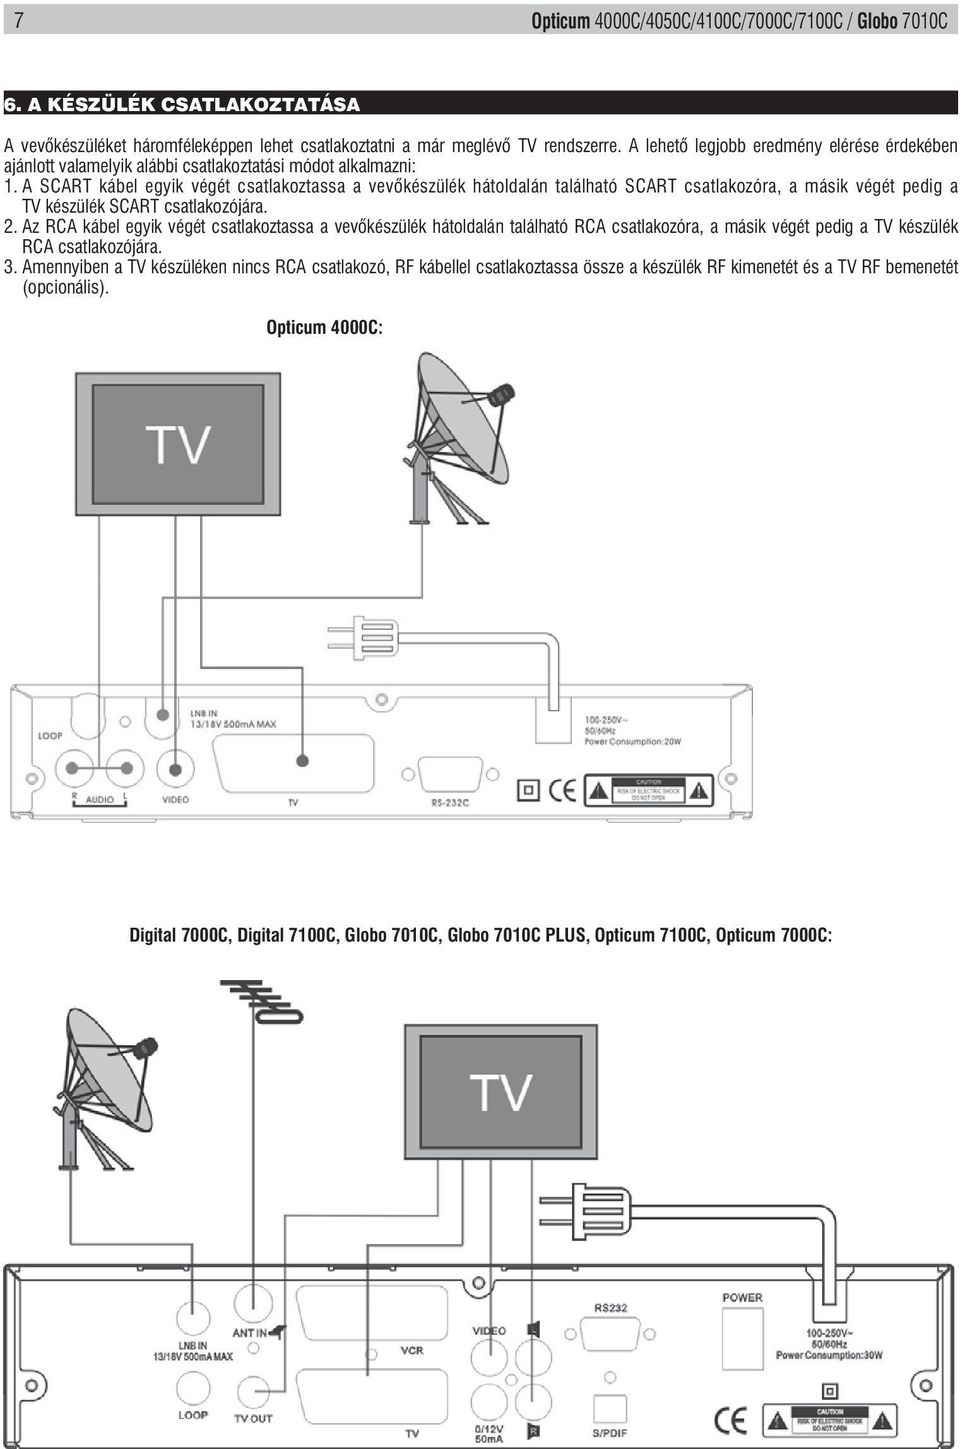 A készülék csatlakoztatása ábel egyik végét csatlakoztassa a vev készülék hátoldalán található SCART a másik A vevőkészüléket végét pedig háromféleképpen a TV készülék lehet csatlakoztatni SCART a